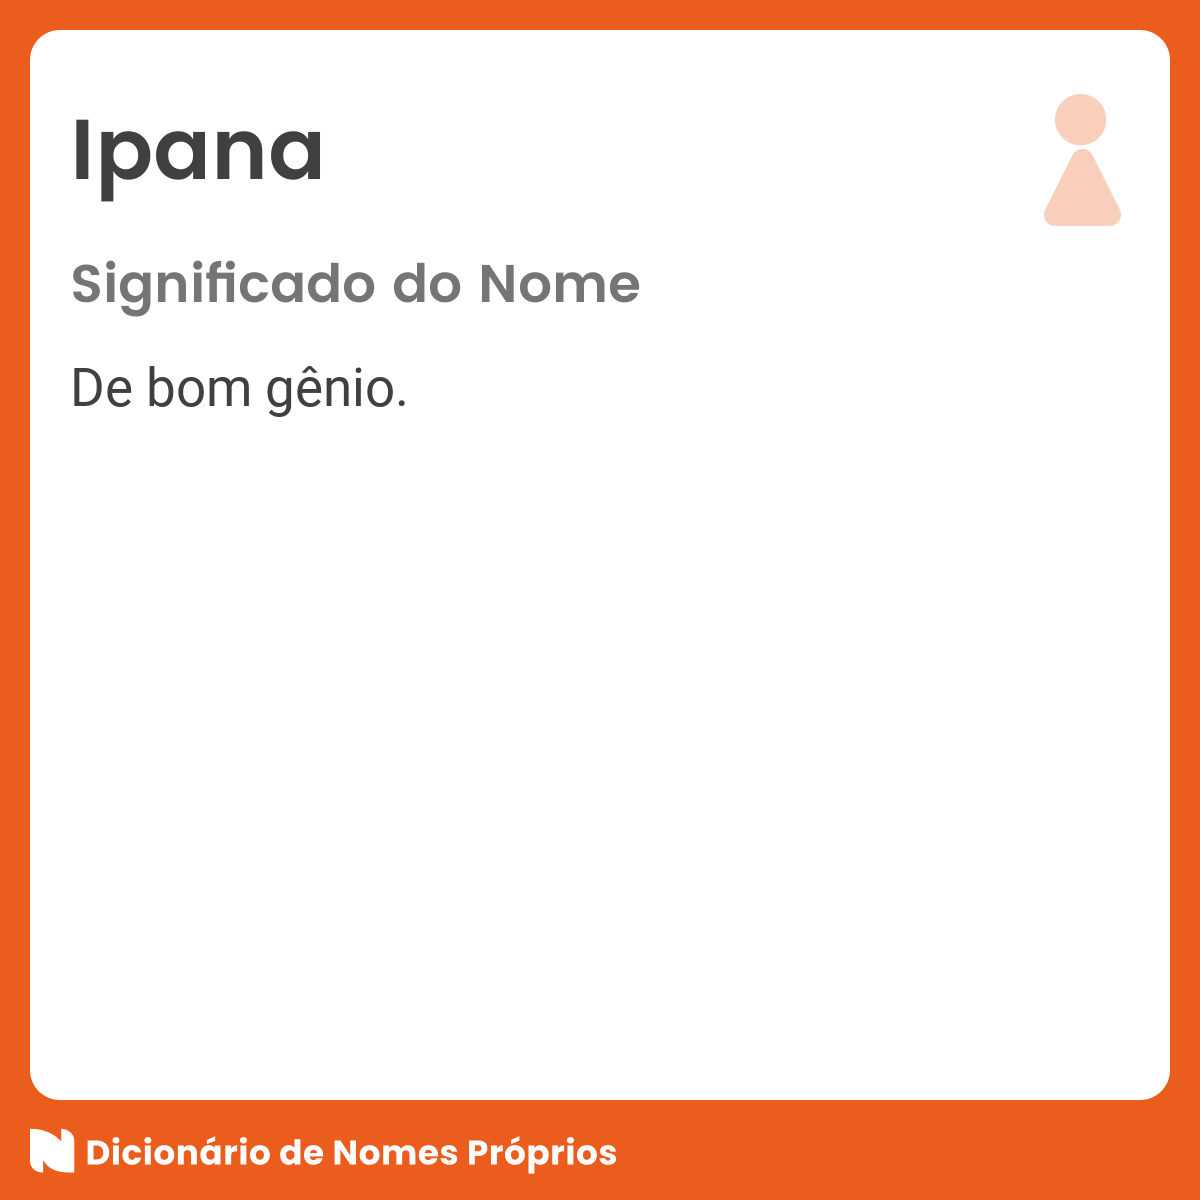 Significado do nome Ipana - Dicionário de Nomes Próprios